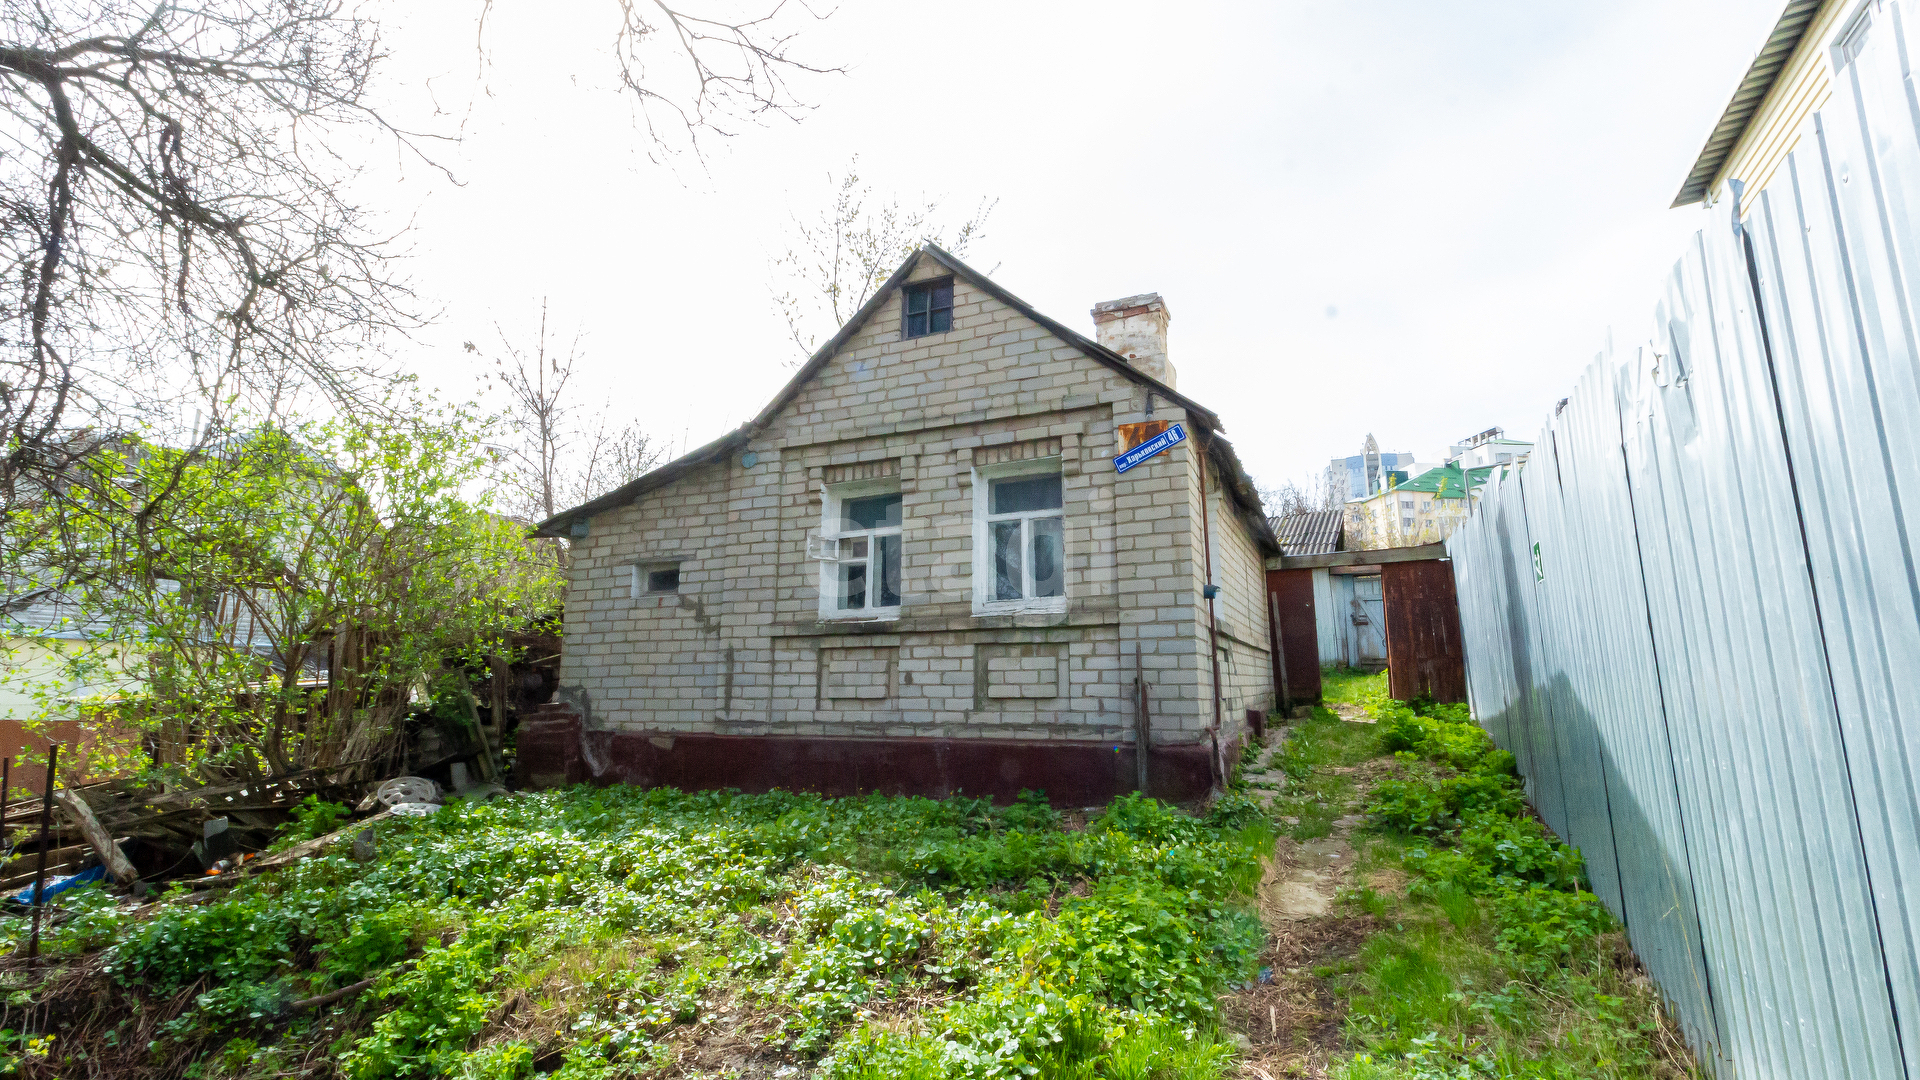 Купить дом в Белгородской области по цене до 300 тыс рублей